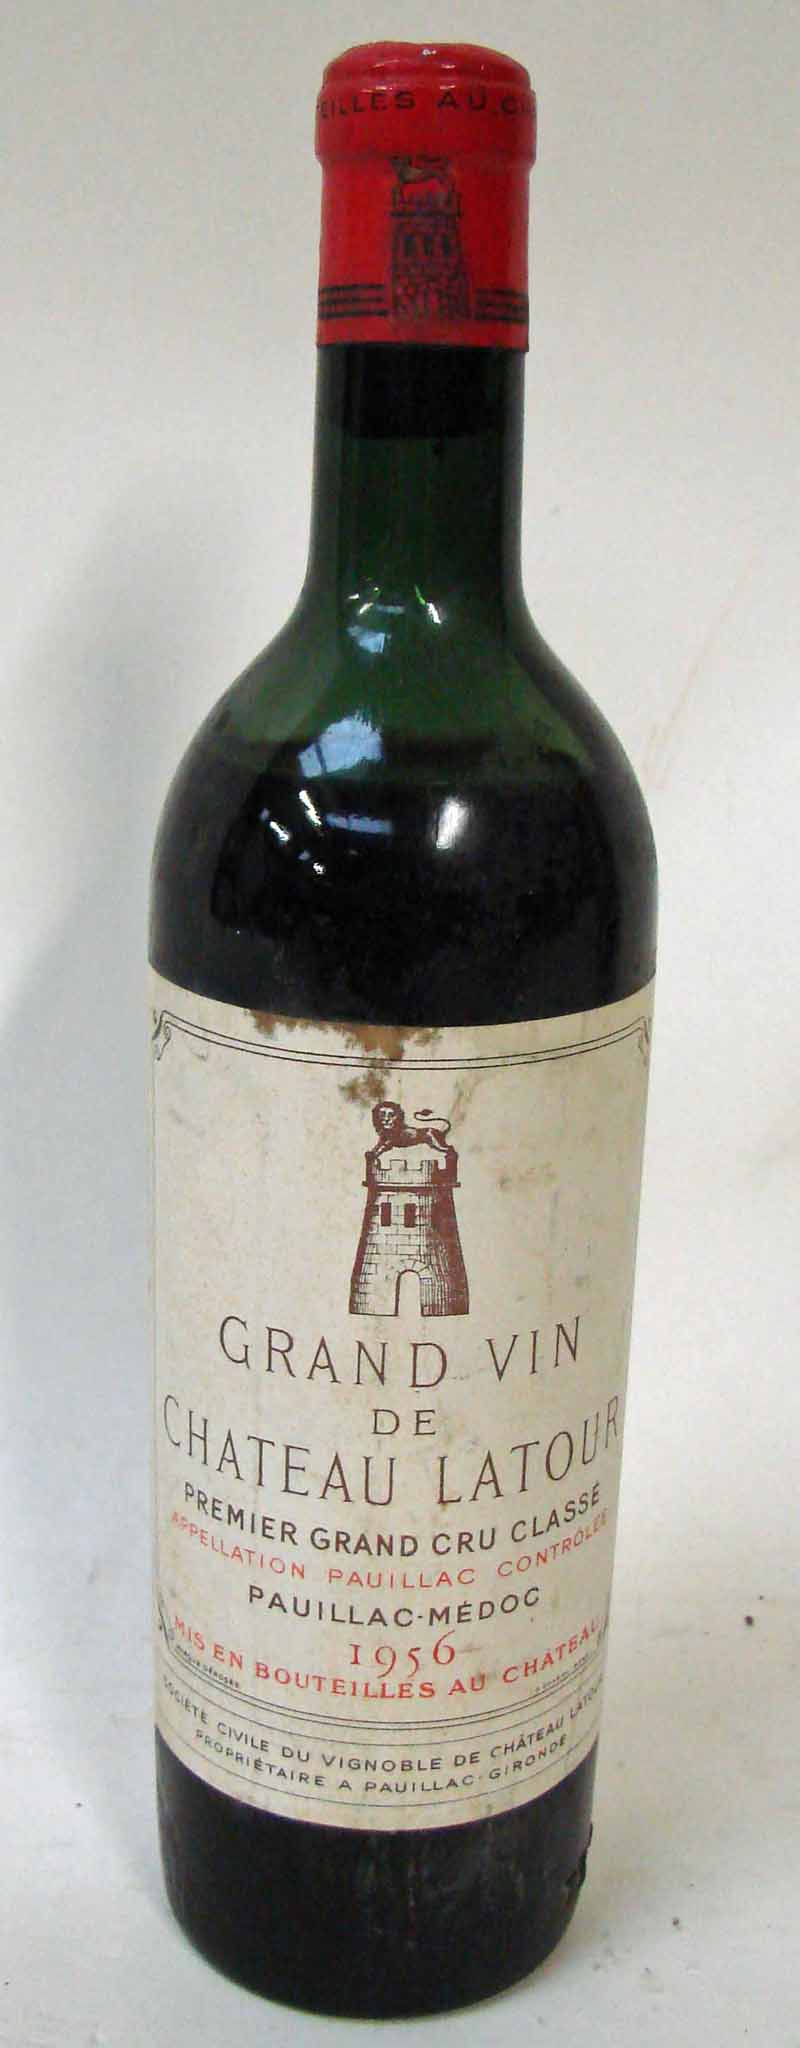 Grand Vin de Chateau Latour, Premier Grand Cru Classé, Pauillac Medoc 1956, one bottle